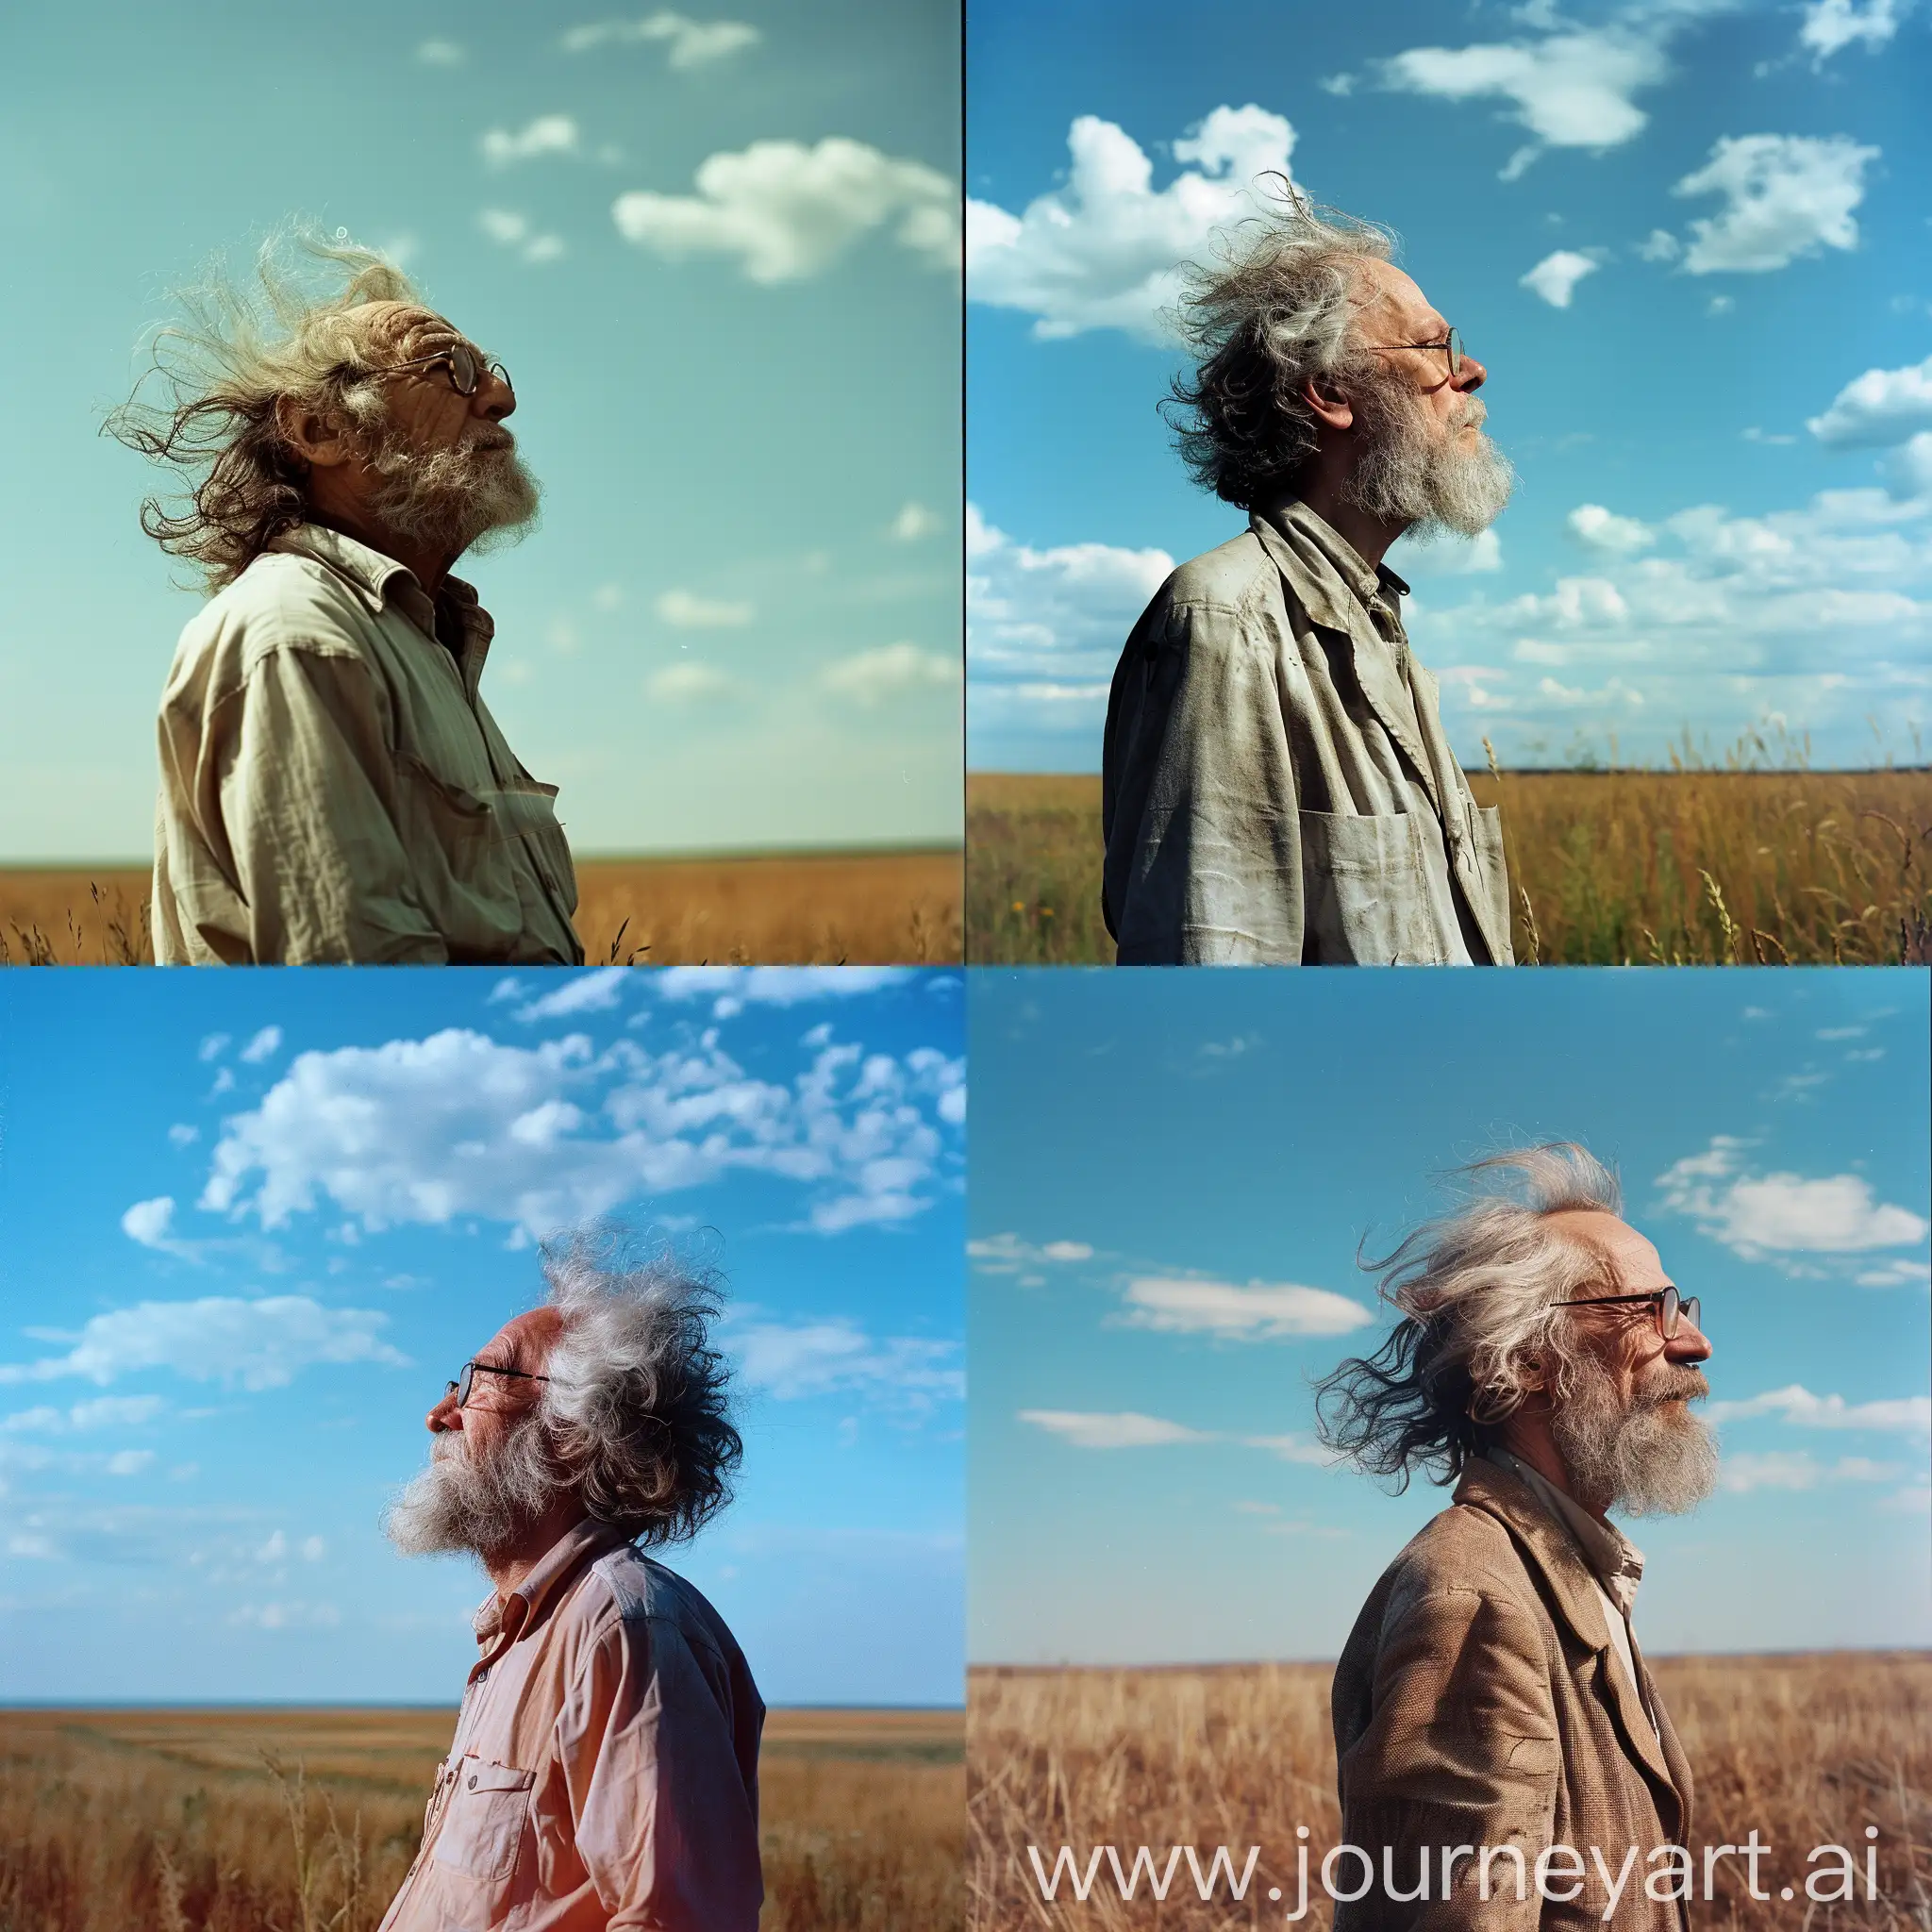 Циолковский, стоит в поле в полный рост, в очках, с растрепанными волосами как у циолковского, смотрит в голубое небо, цветное четкое фото